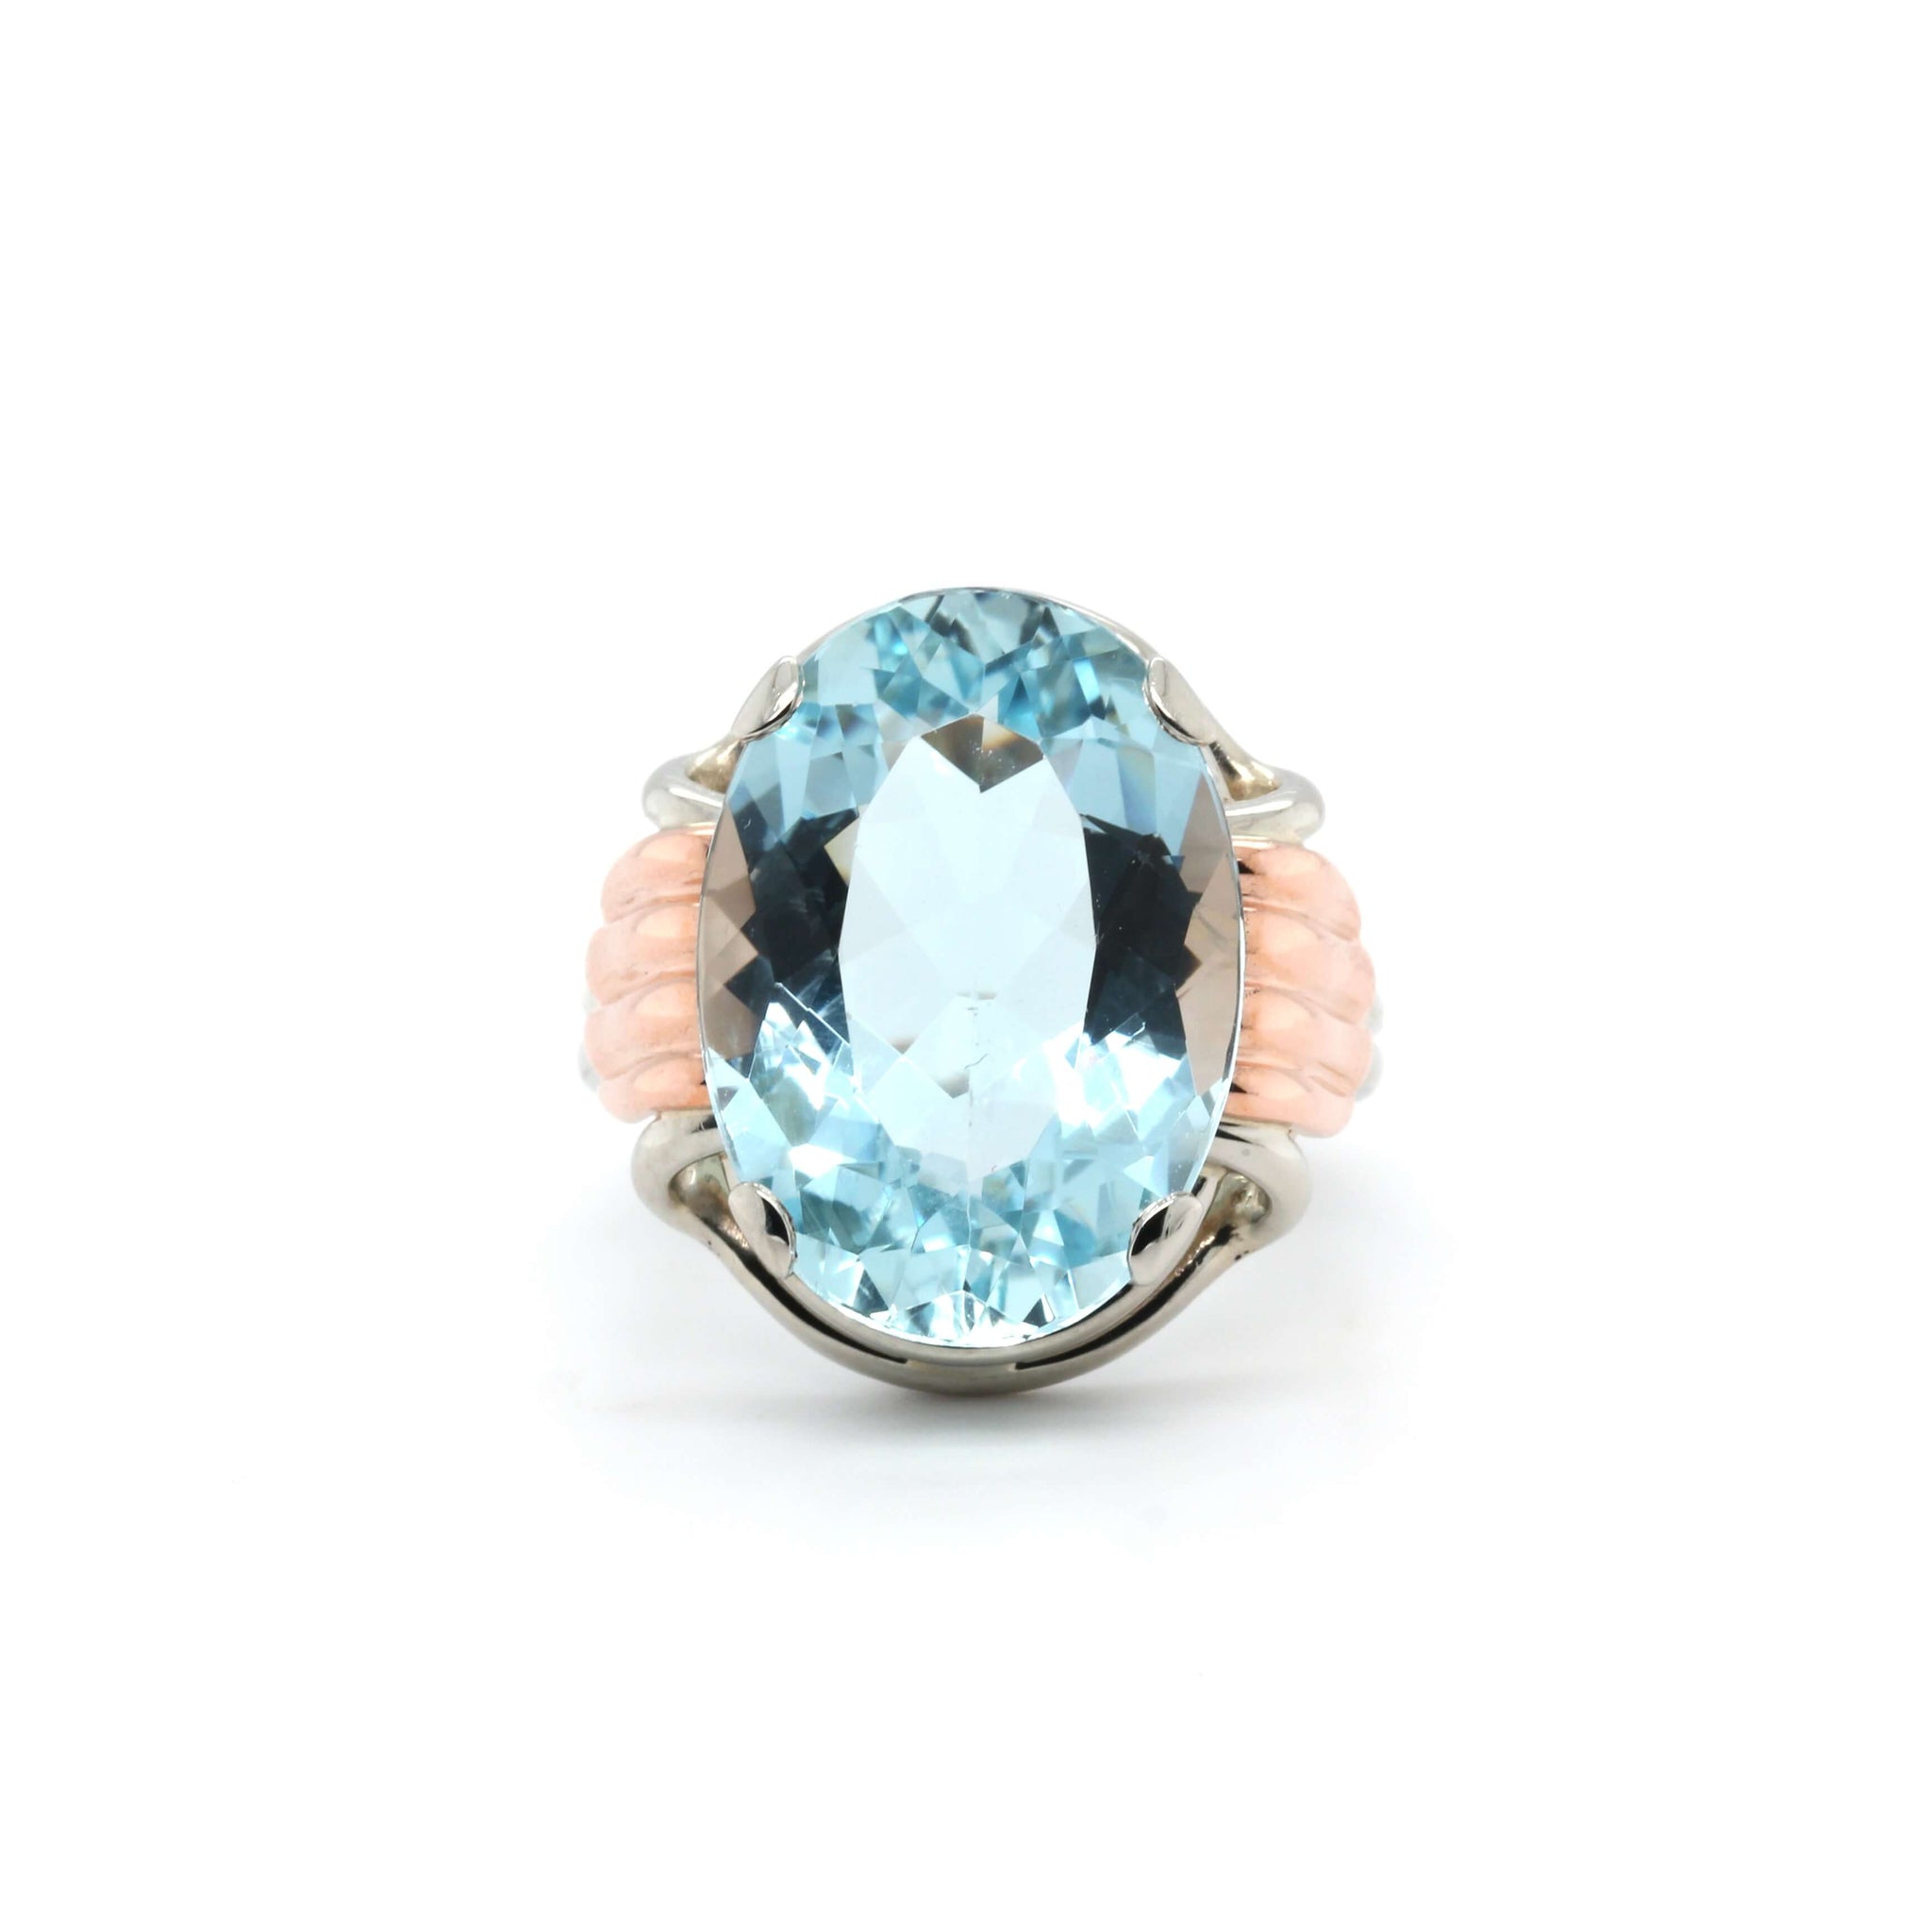 1940s Aquamarine Ring